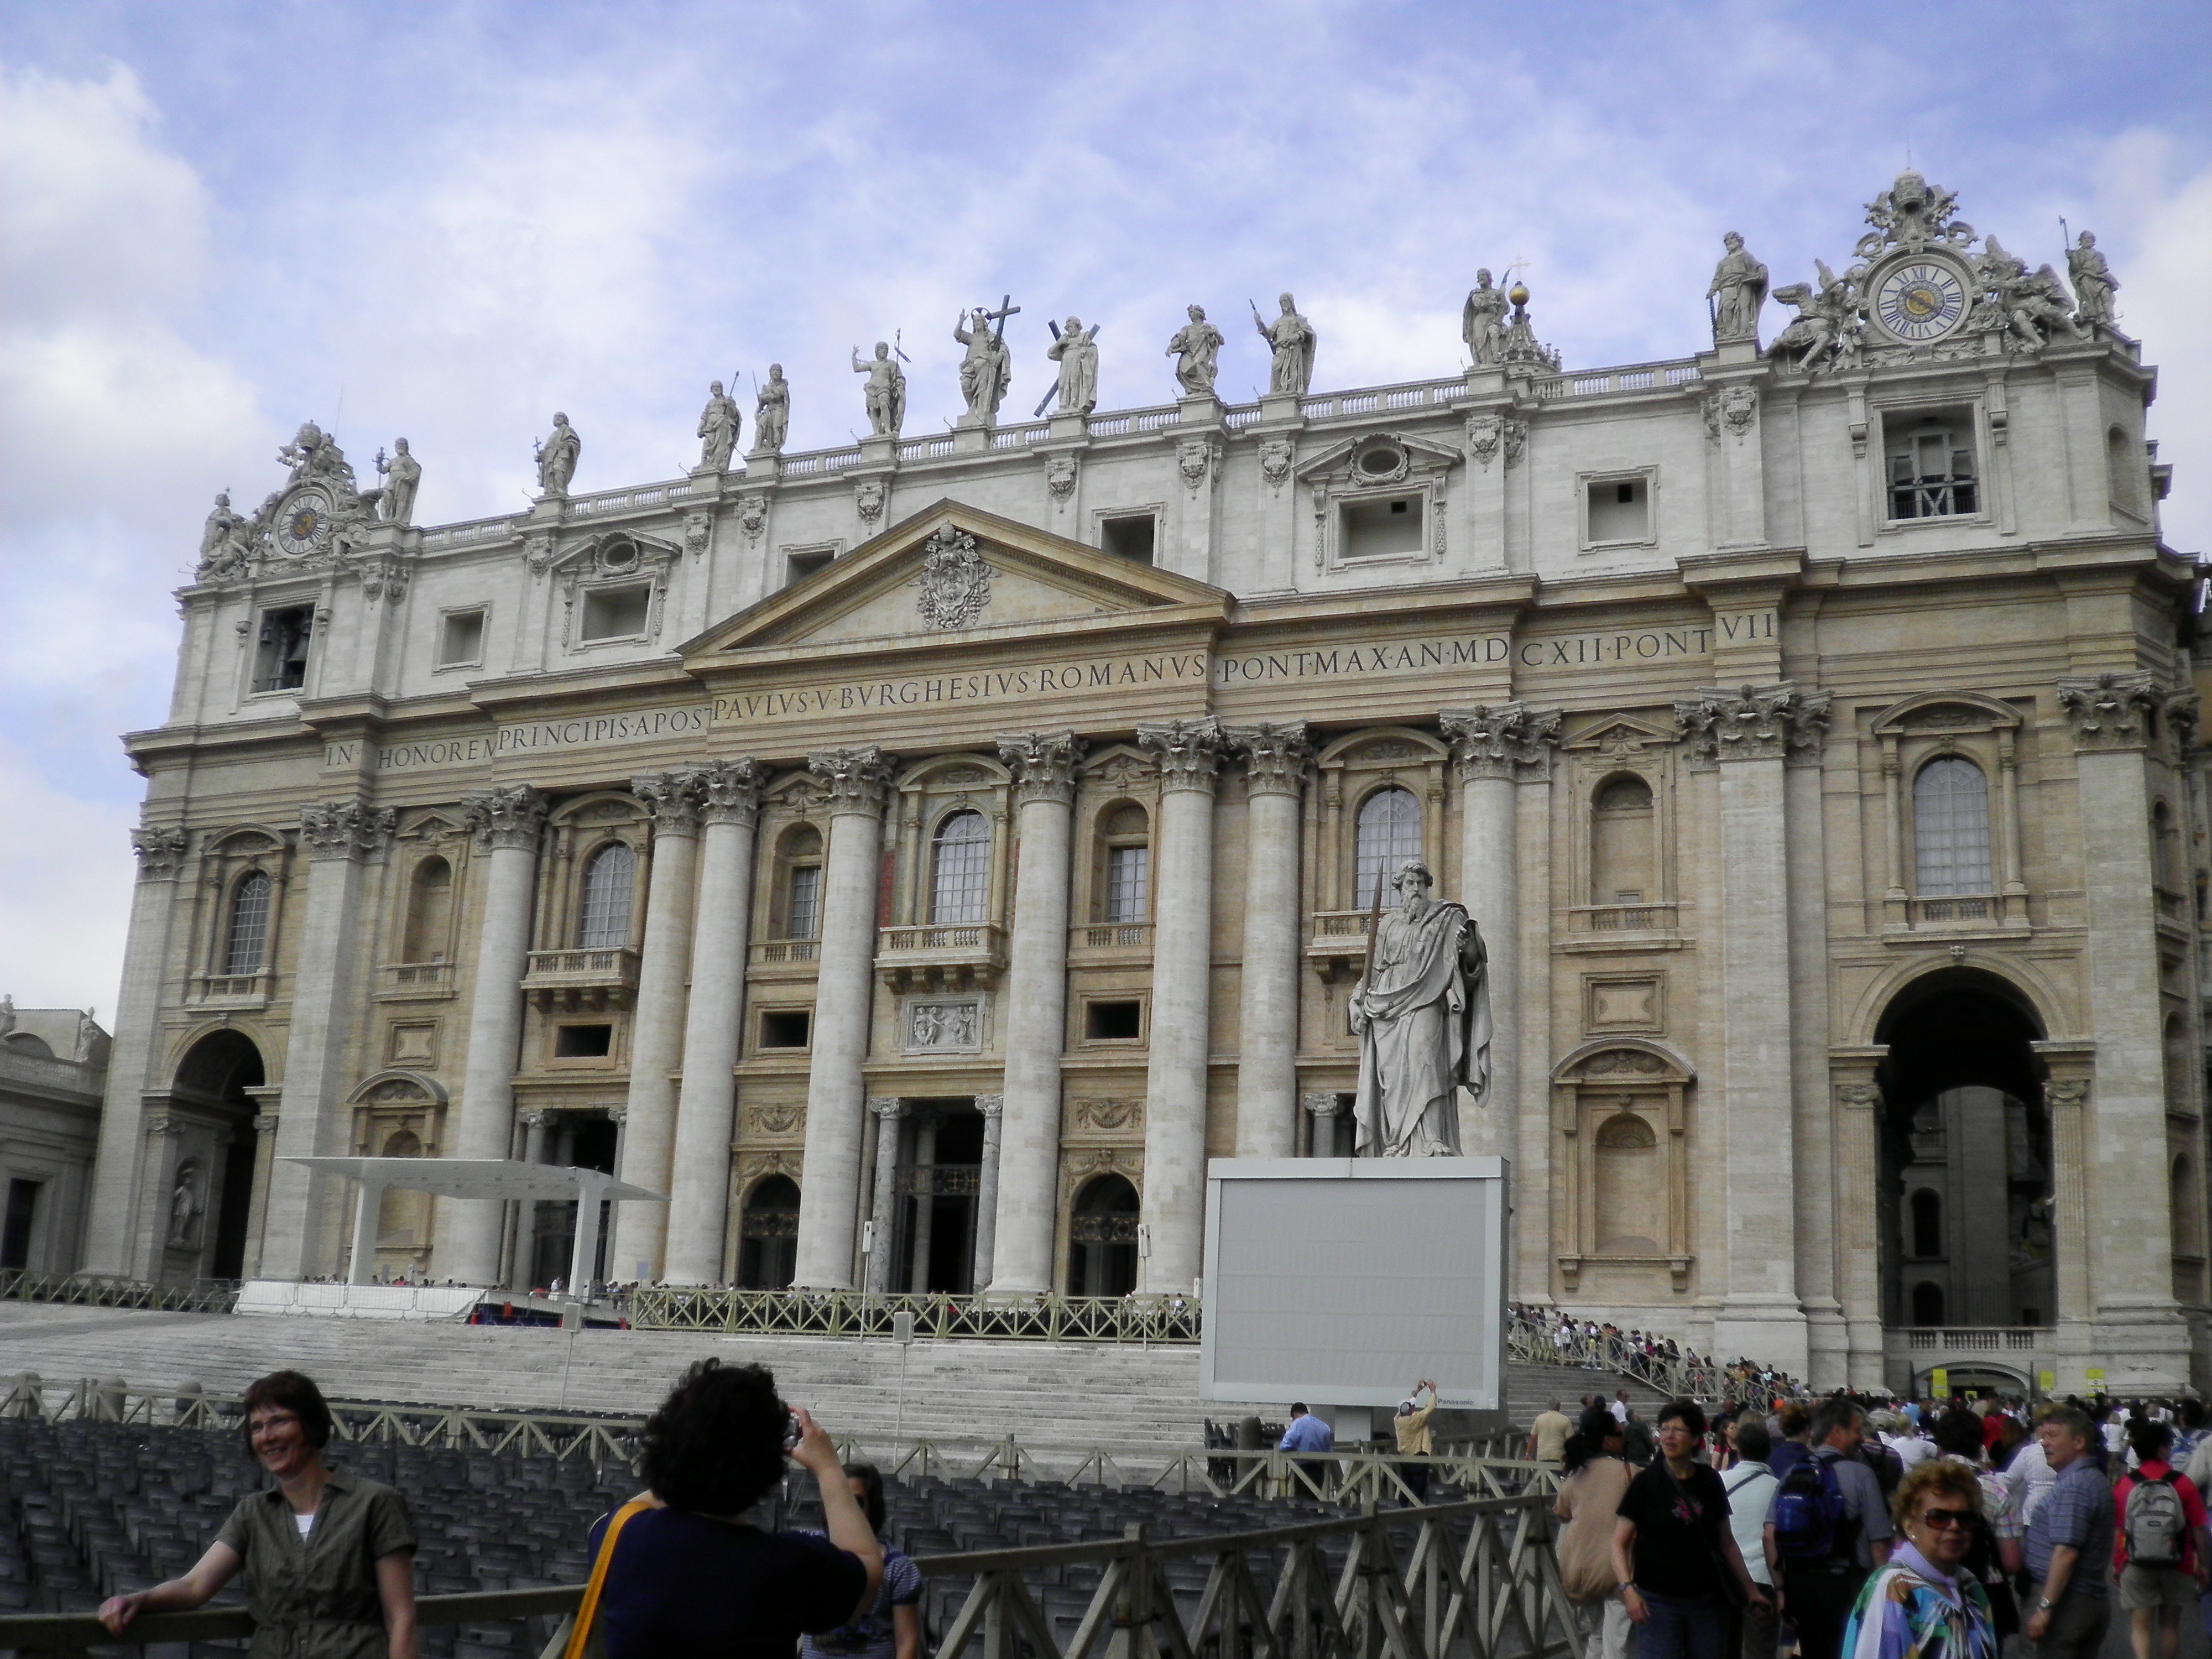 St. Peter's Basilica | arteroma2010